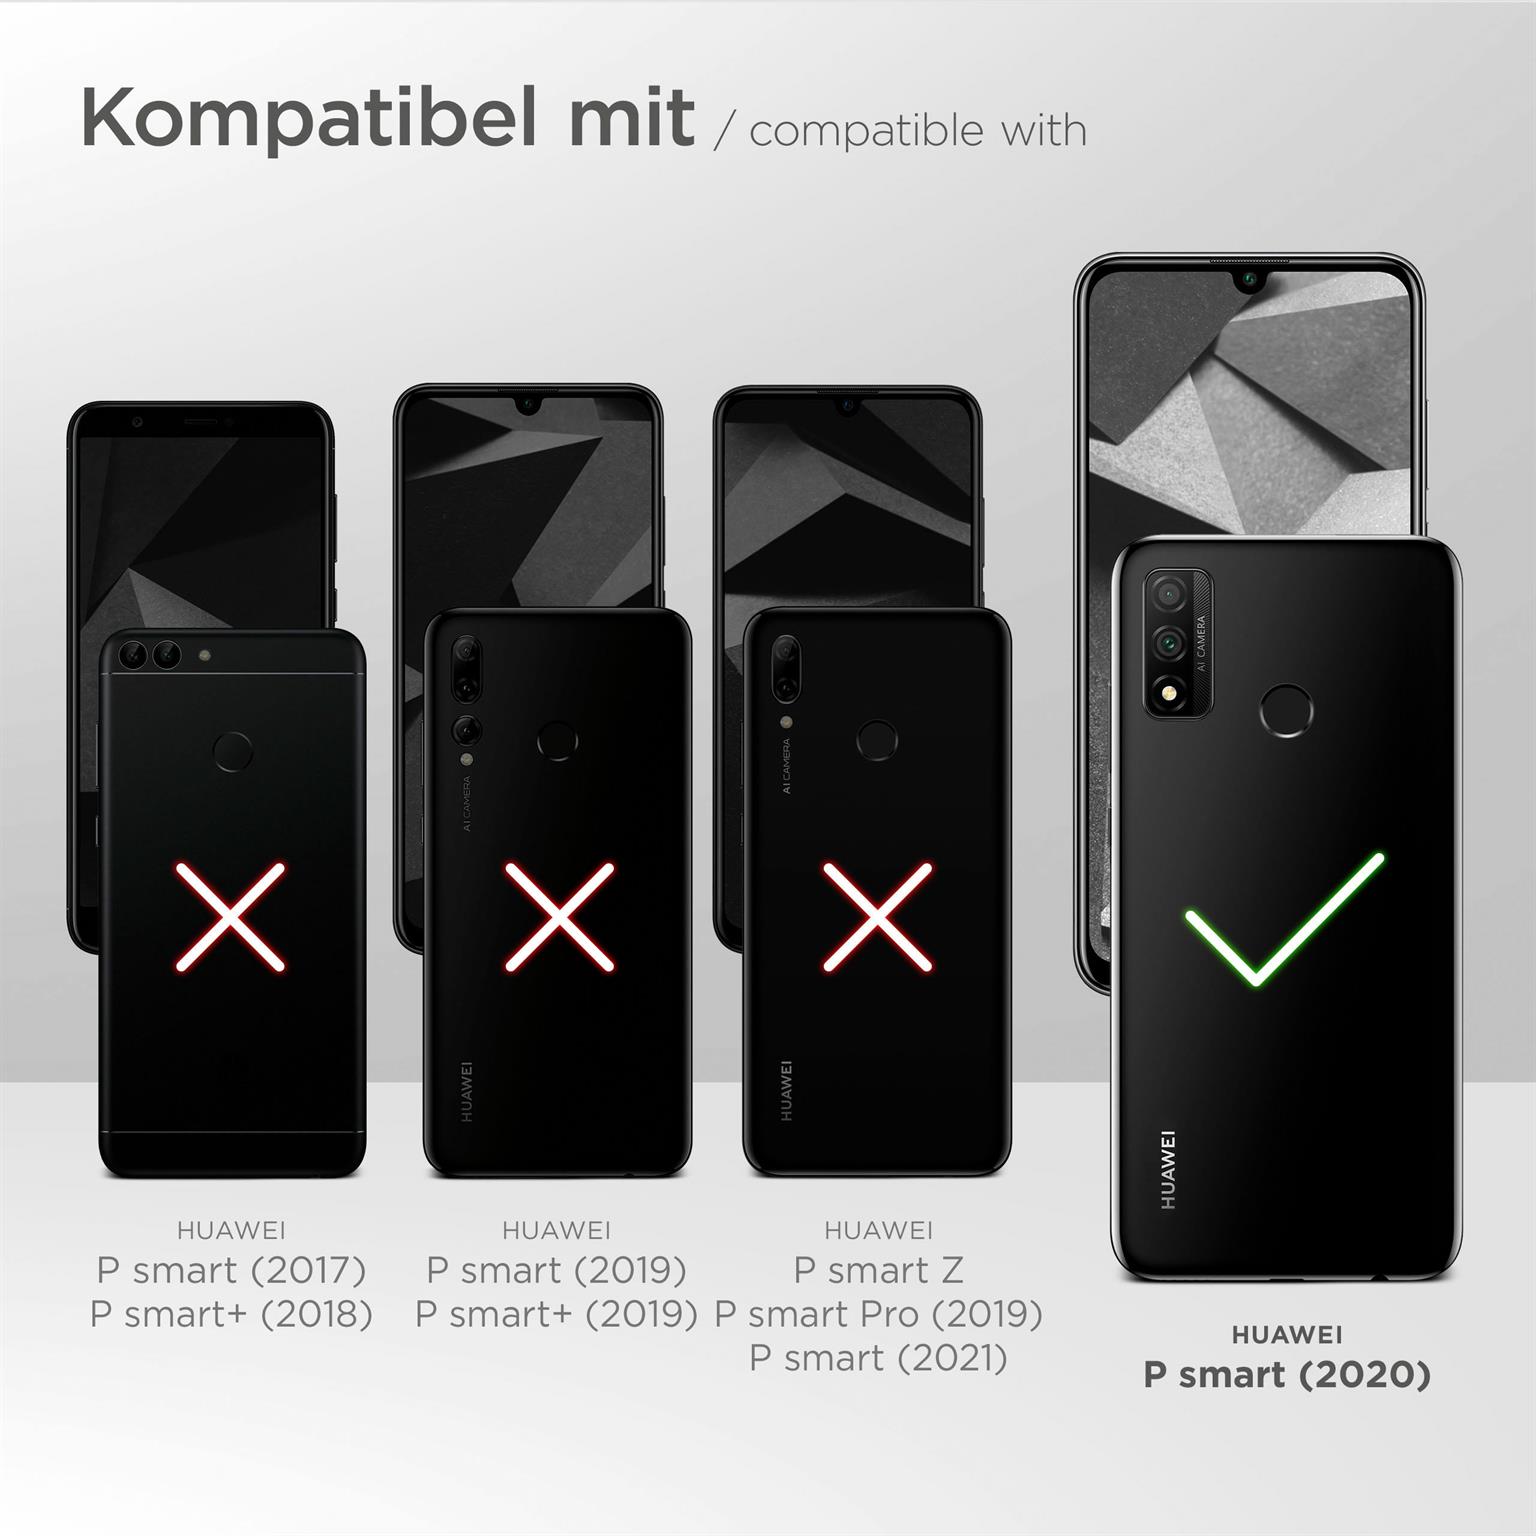 moex Alpha Case für Huawei P smart 2020 – Extrem dünne, minimalistische Hülle in seidenmatt